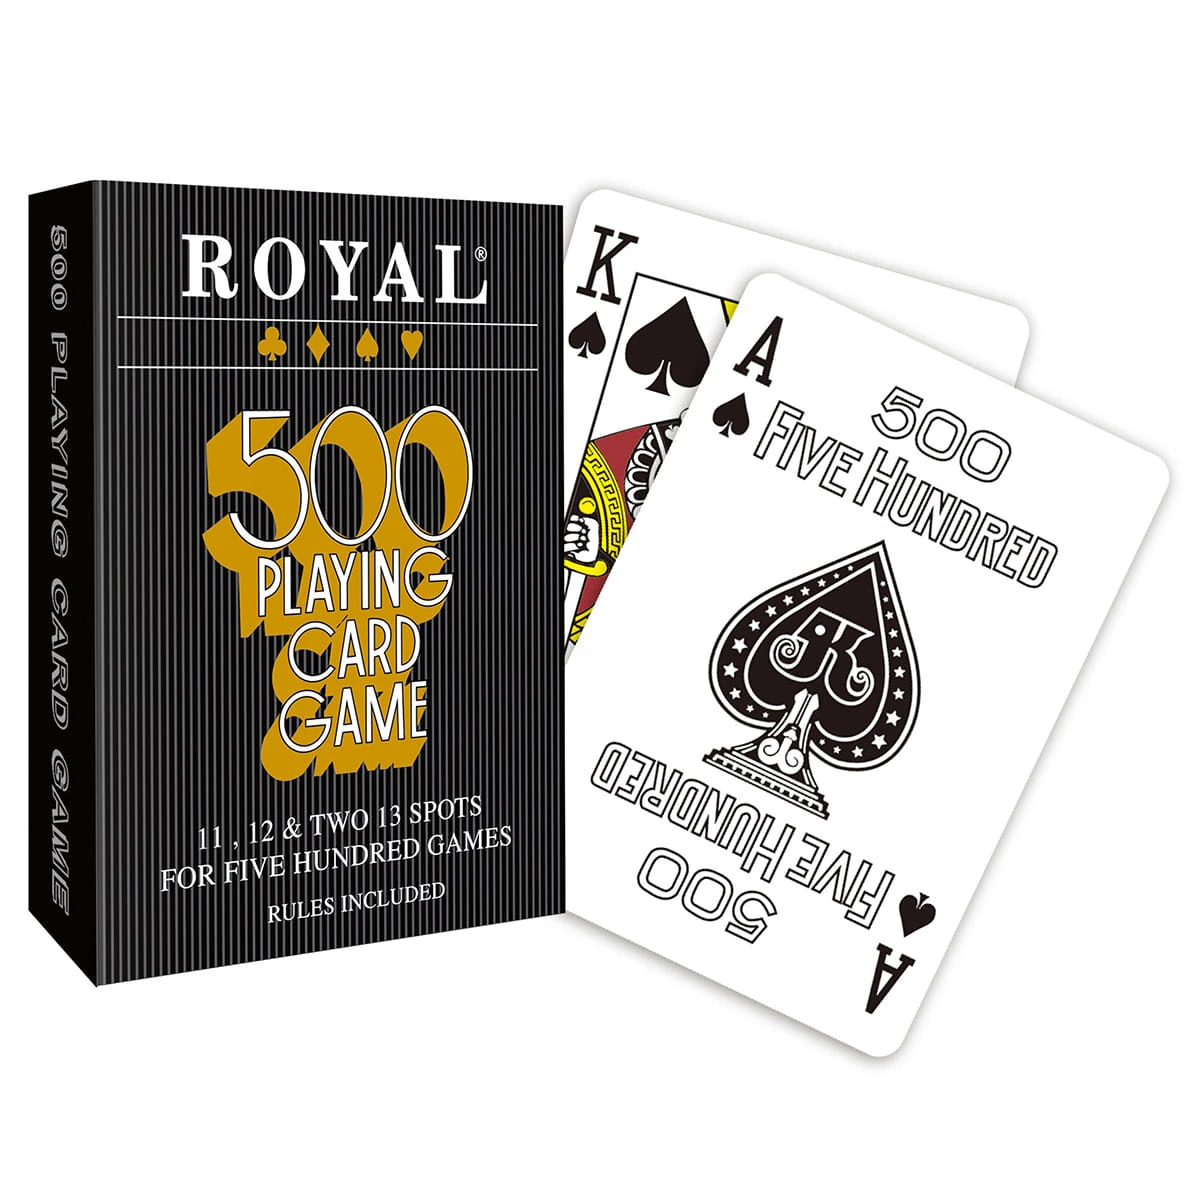 Jeu de cartes Royal 500